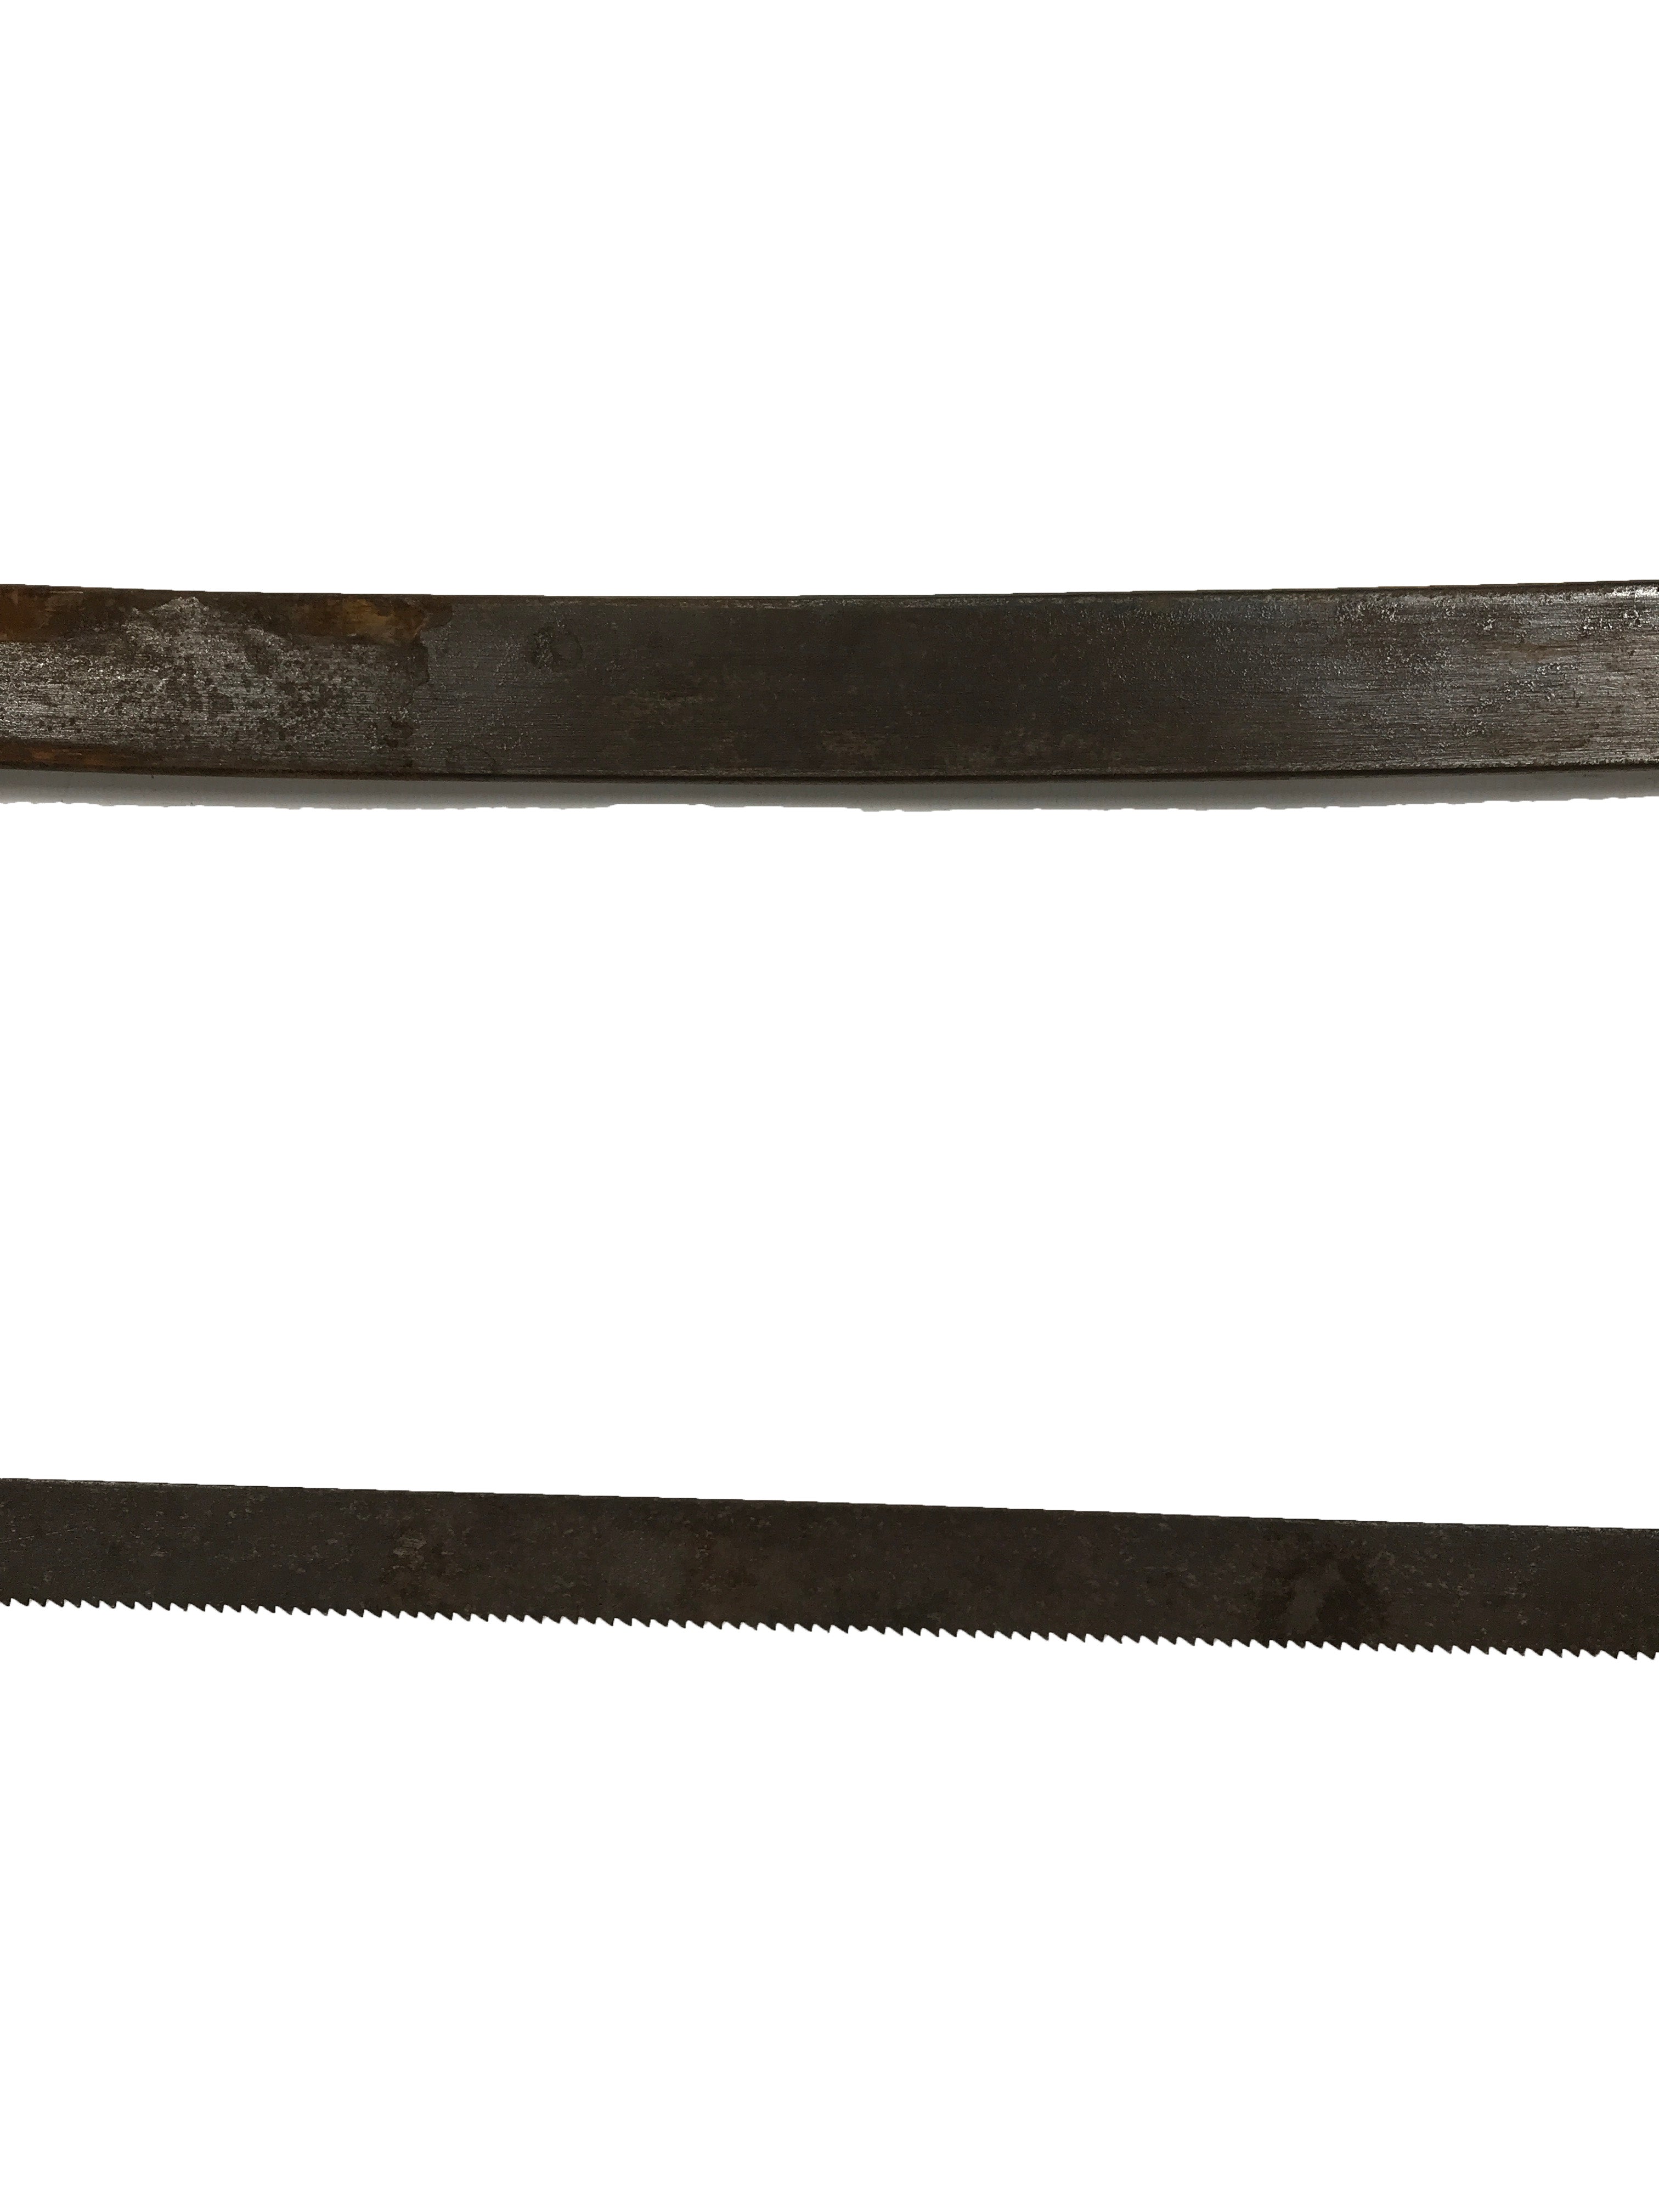 Antique George H. Bishop #21 Hacksaw Wood Handle 25" Blade